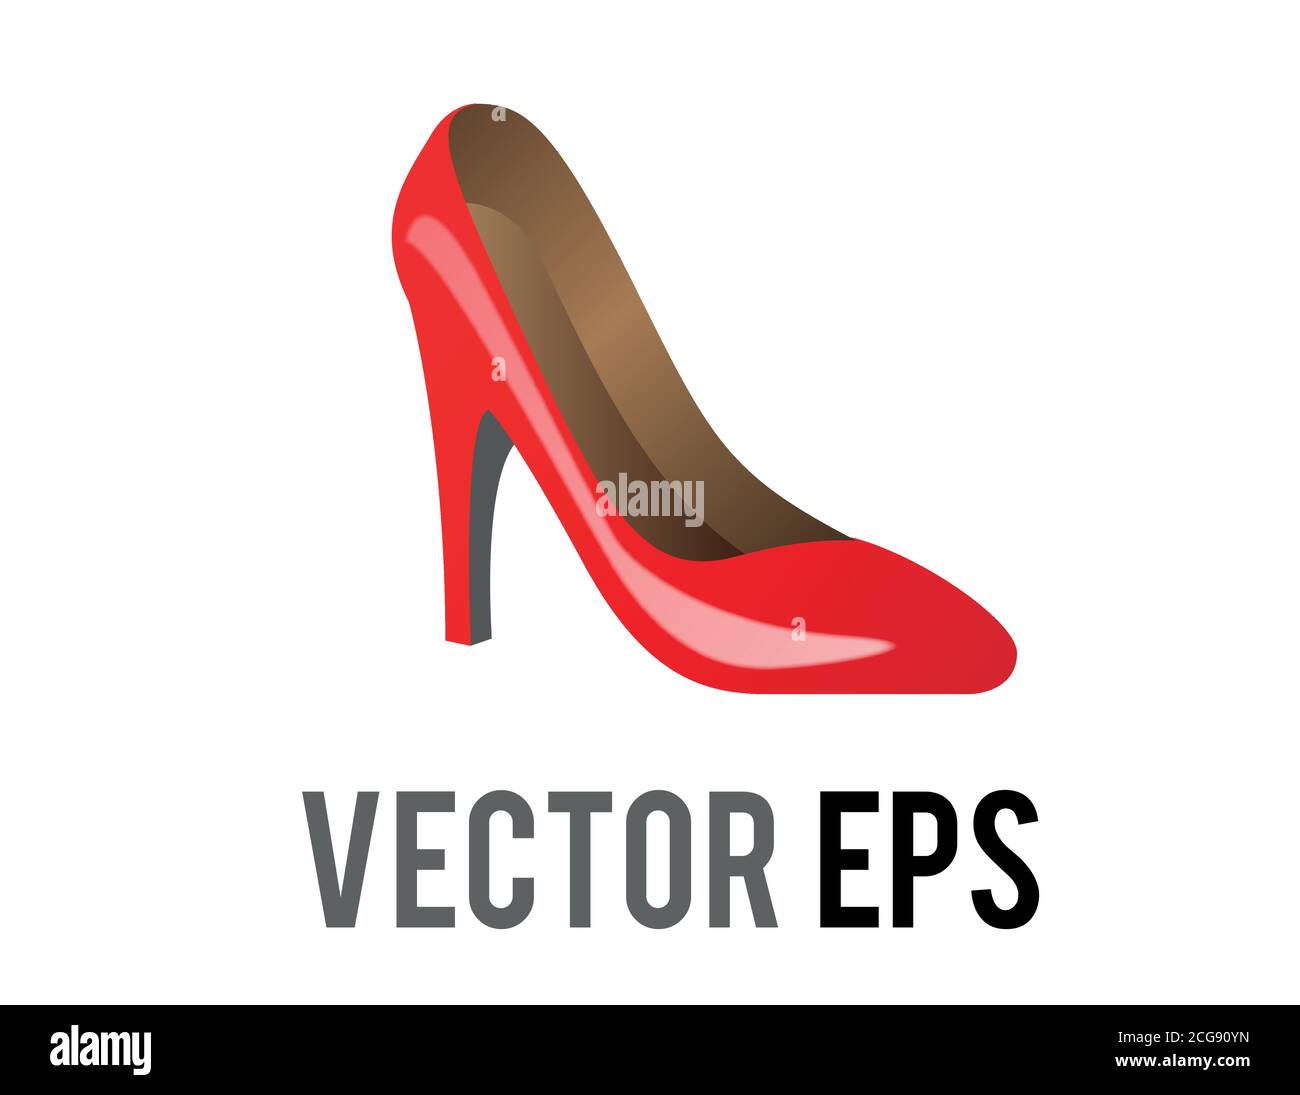 Il rosso vettoriale isolato forma un'icona di scarpe con tacco alto per occasioni sociali, eventi o luoghi di lavoro Illustrazione Vettoriale